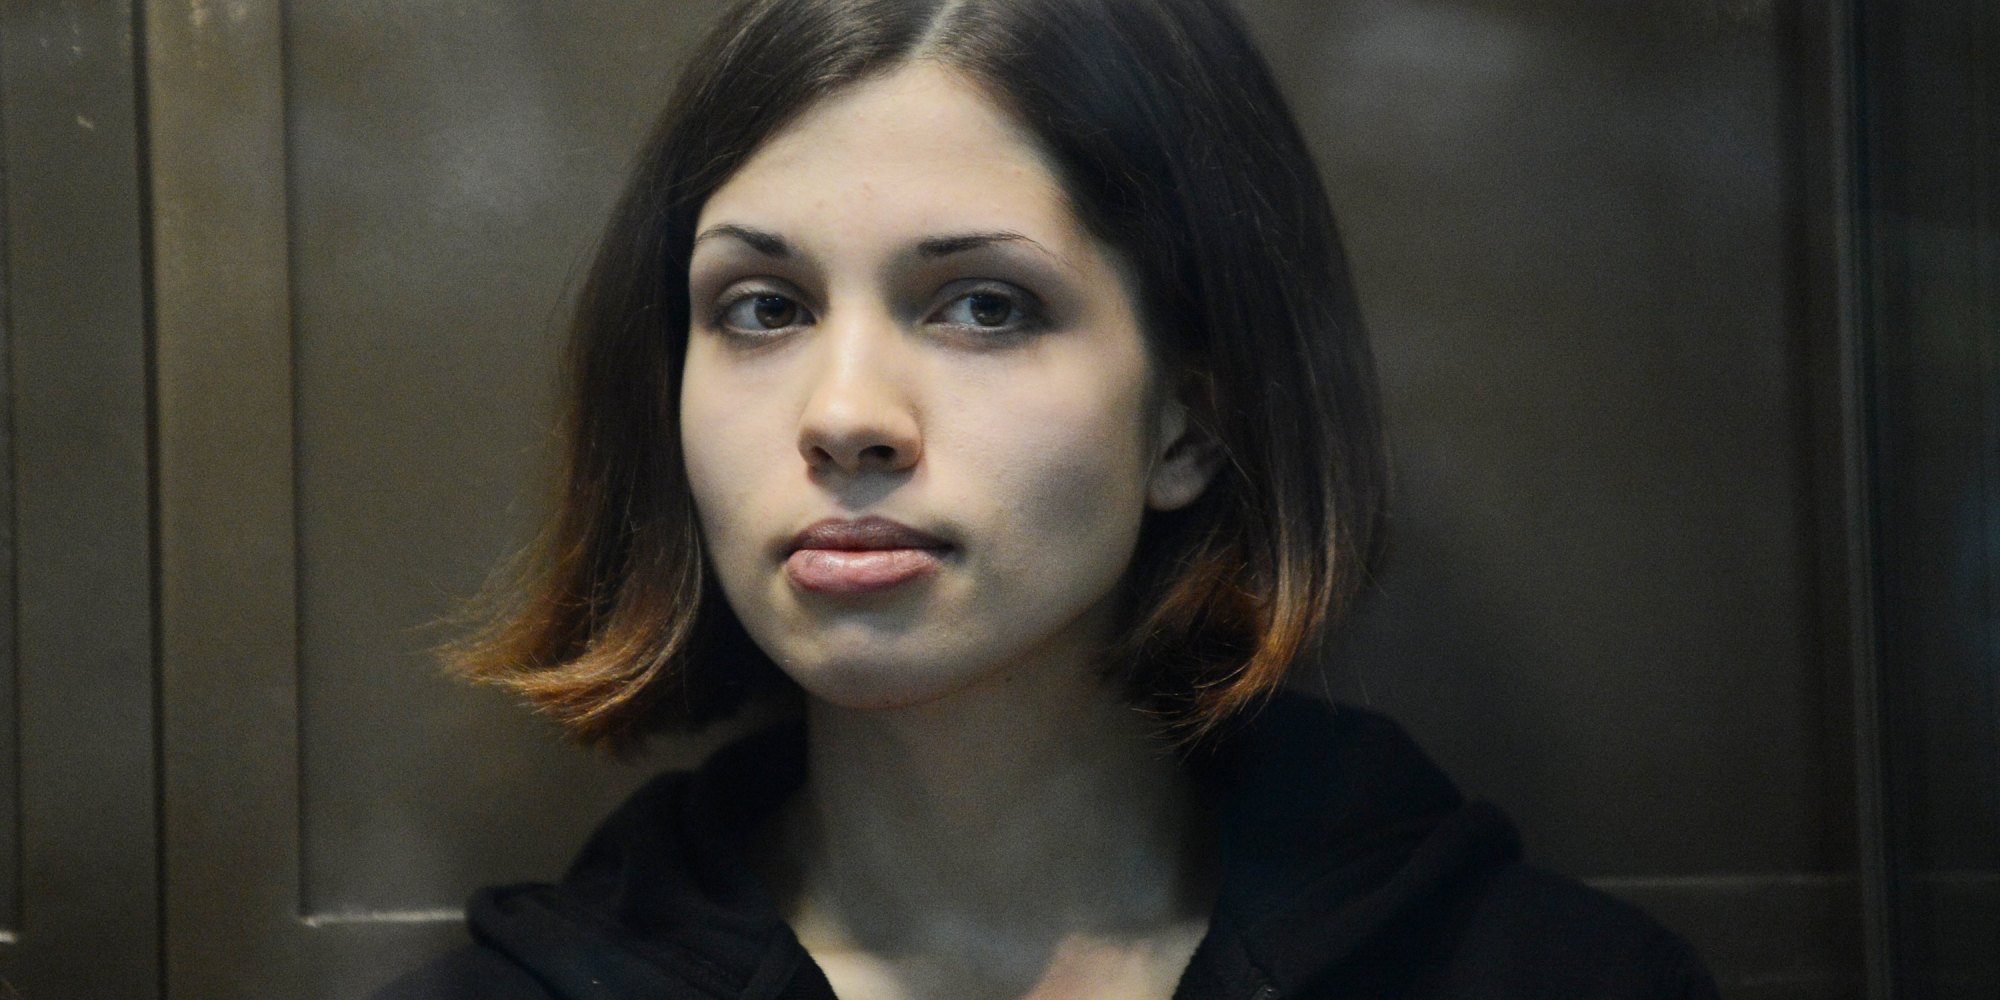 Pussy Riots Nadezhda Tolokonnikova Describes Depravity Of Stalinist 